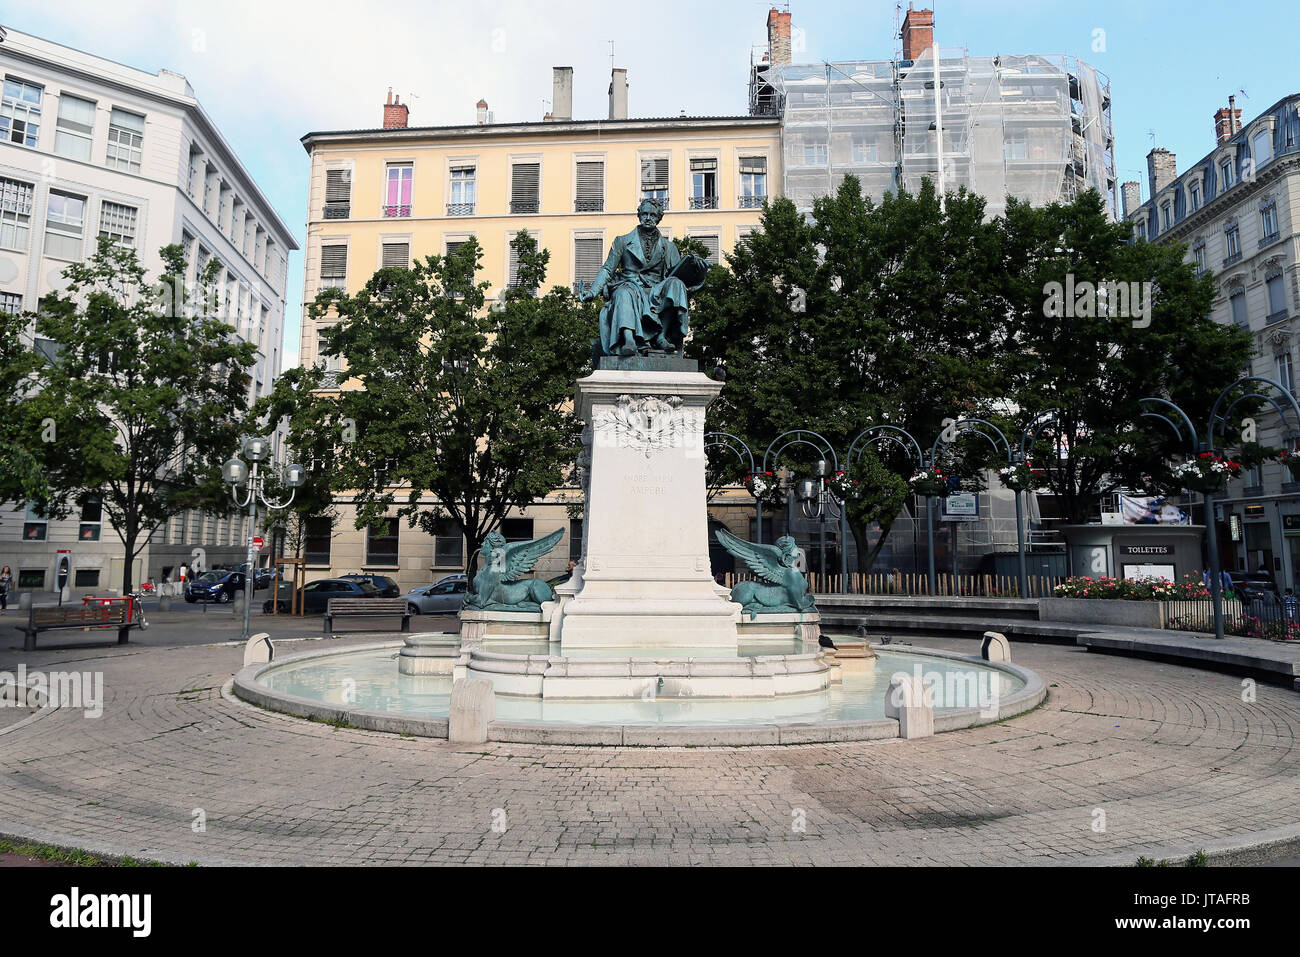 Una statua realizzata da Carlo Textor raffigurante Andre-Marie Ampere eretto nel centro della piazza, Lione, la Valle del Rodano, Francia, Europa Foto Stock